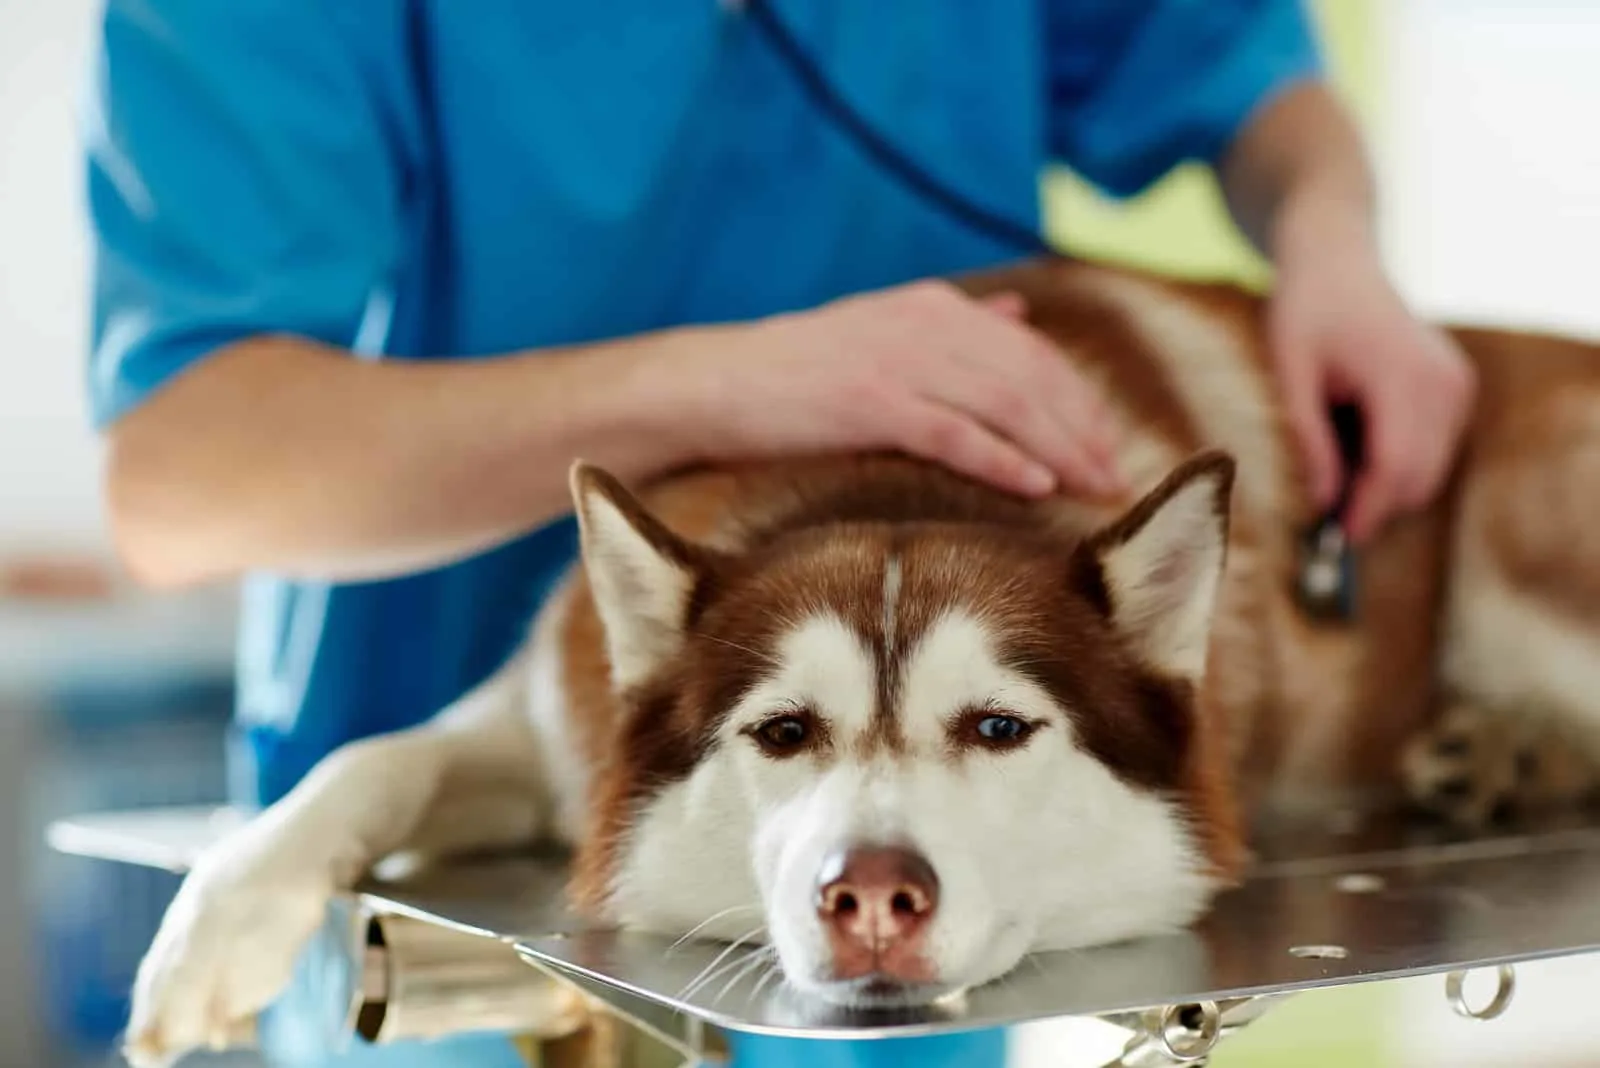 Medizinische Behandlung eines kranken Husky-Hundes in einer Tierklinik